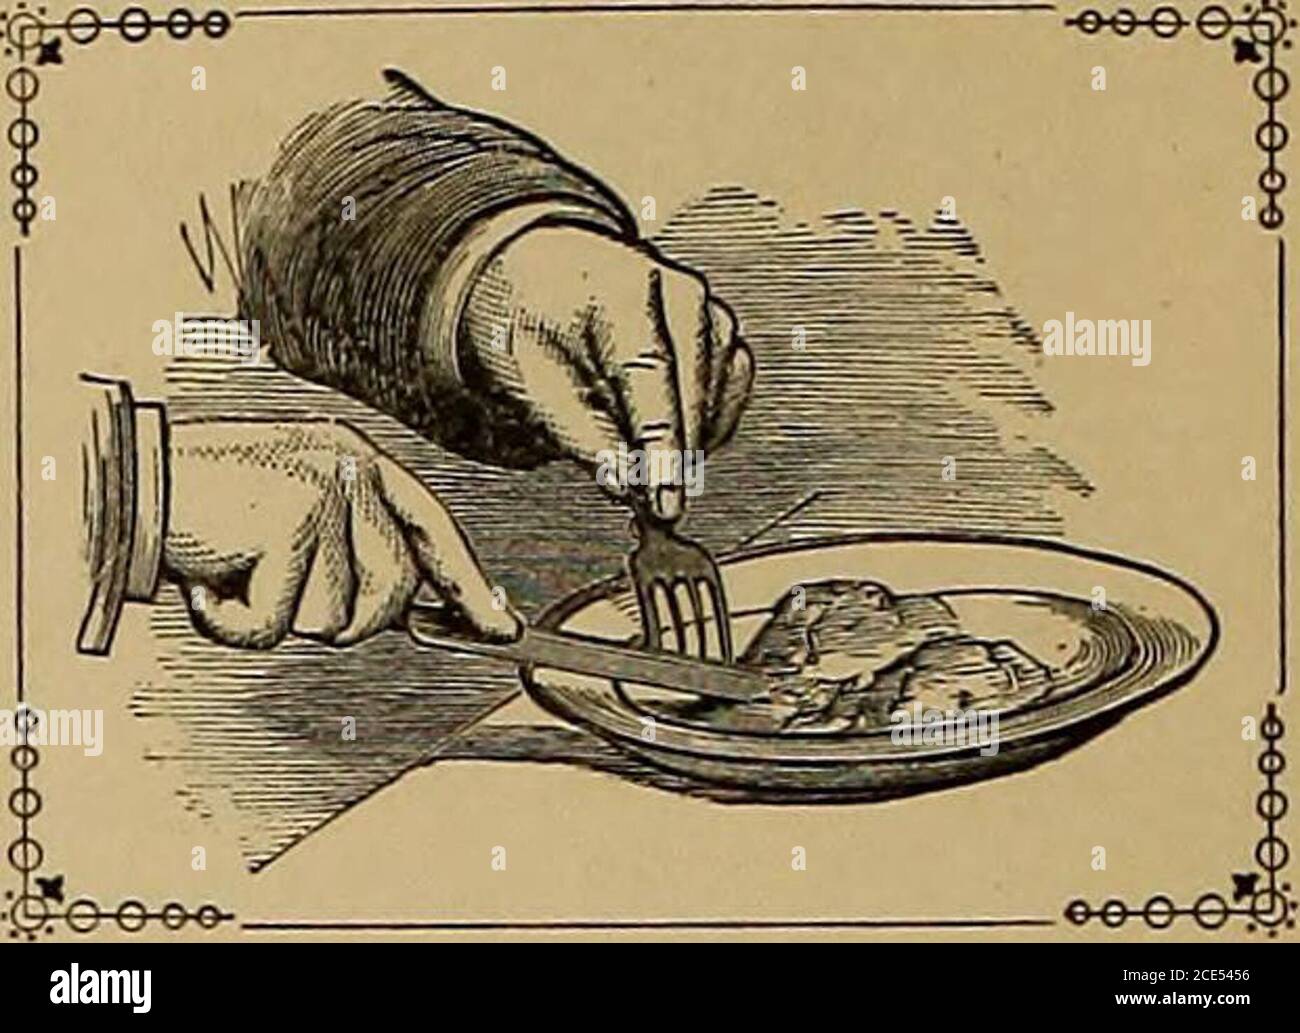 . Hill's Manuale delle forme sociali e di affari: Una guida alla corretta scrittura .. . è showna faglia comune con il manypeople di tenere-coltello e forchetta sopra la mano (Fig;.13) quando schiacciare-pota-punte, tagliare carne, ecc theposition non è solo unfa-vaborable per ottenere- agood comando di knifeand fork, ma è simpatico. L'illustrazione del contrasto (Fig. 14) rappresenta un postnre facile e grazia per le mani, quando si mangia. L'abitudine di tenere le mani così in posizioni corrette può essere acquisita con la stessa facilità di qualsiasi altra. È bene abituarsi a mangiare con la sinistra, in modo da evitare Th Foto Stock